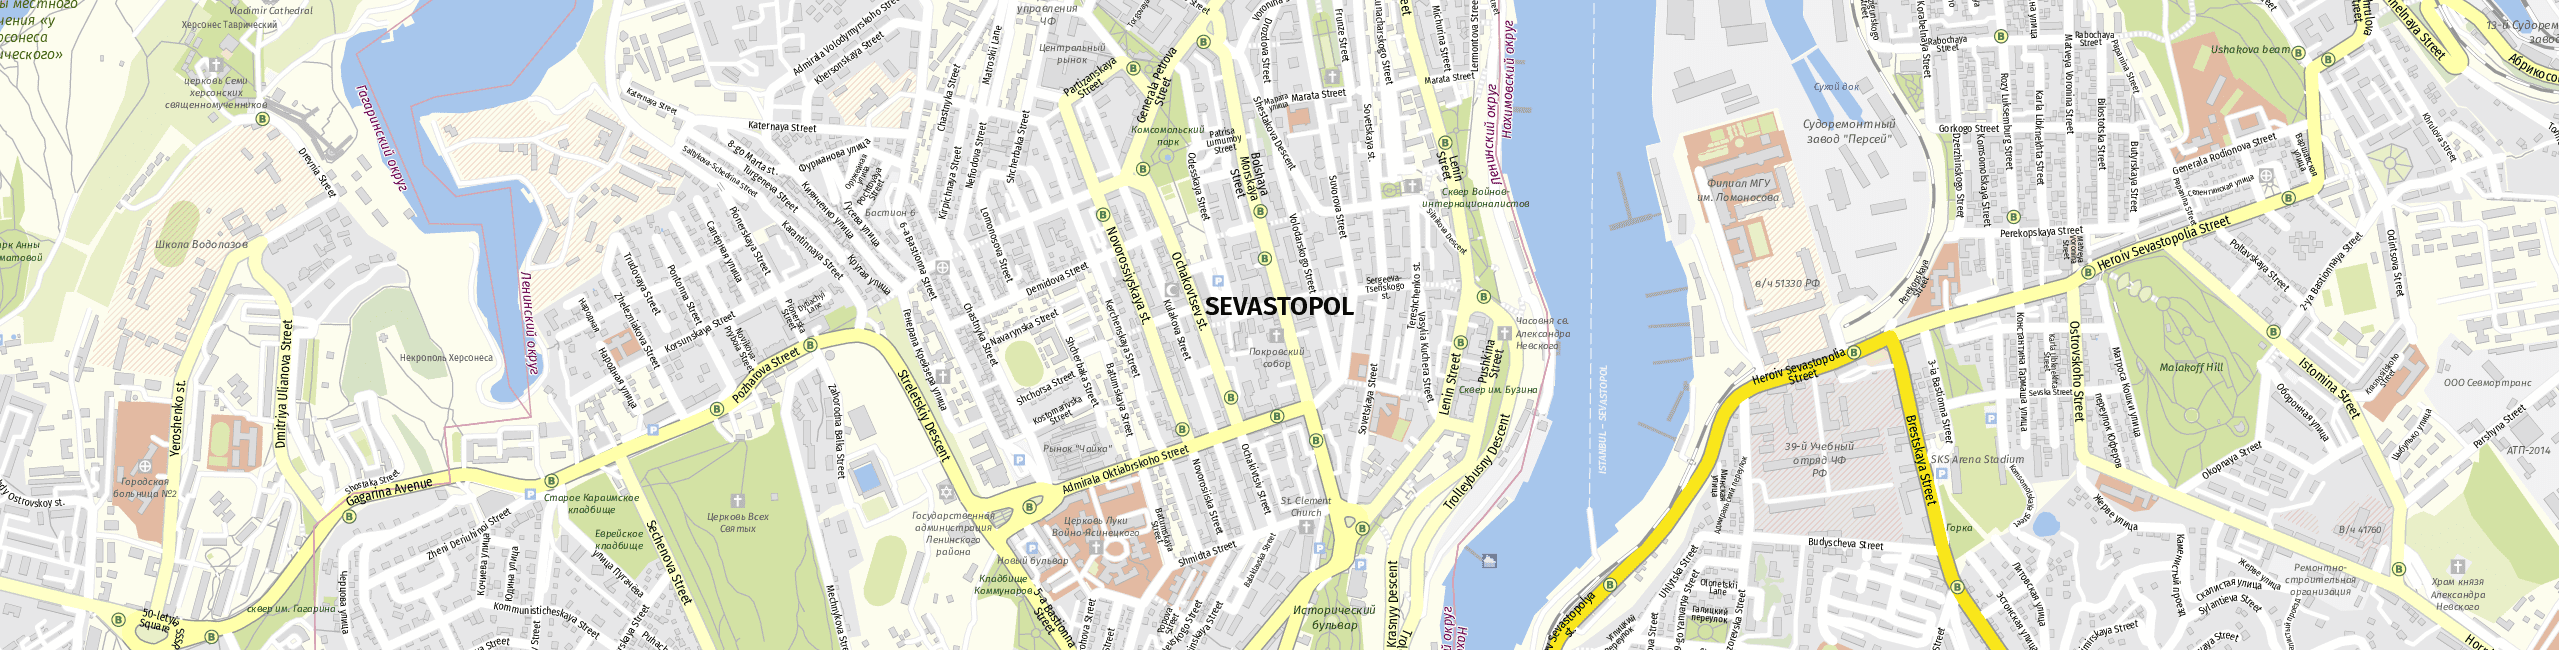 Stadtplan Sevastopol zum Downloaden.